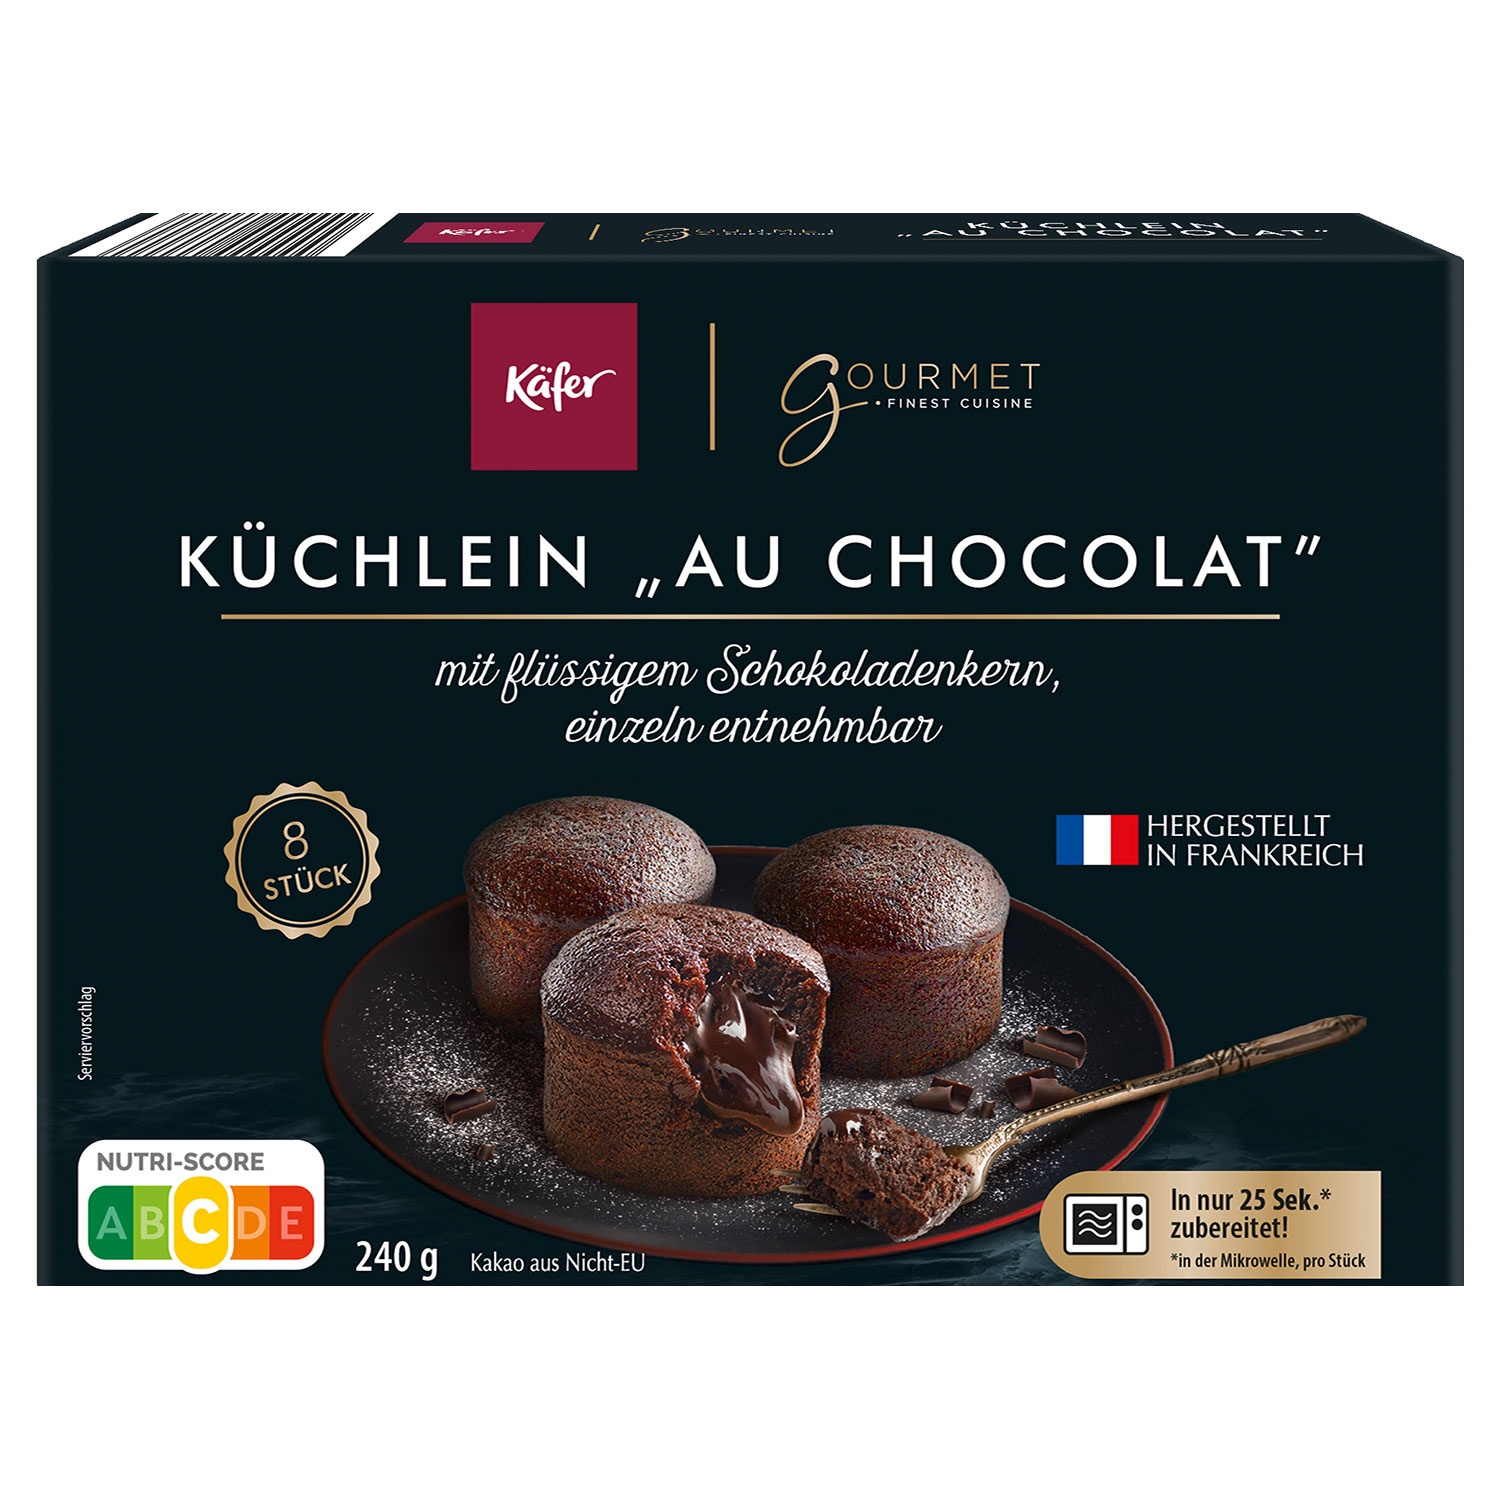 KÄFER X GOURMET FINEST CUISINE Küchlein "Au Chocolat" 240 g 